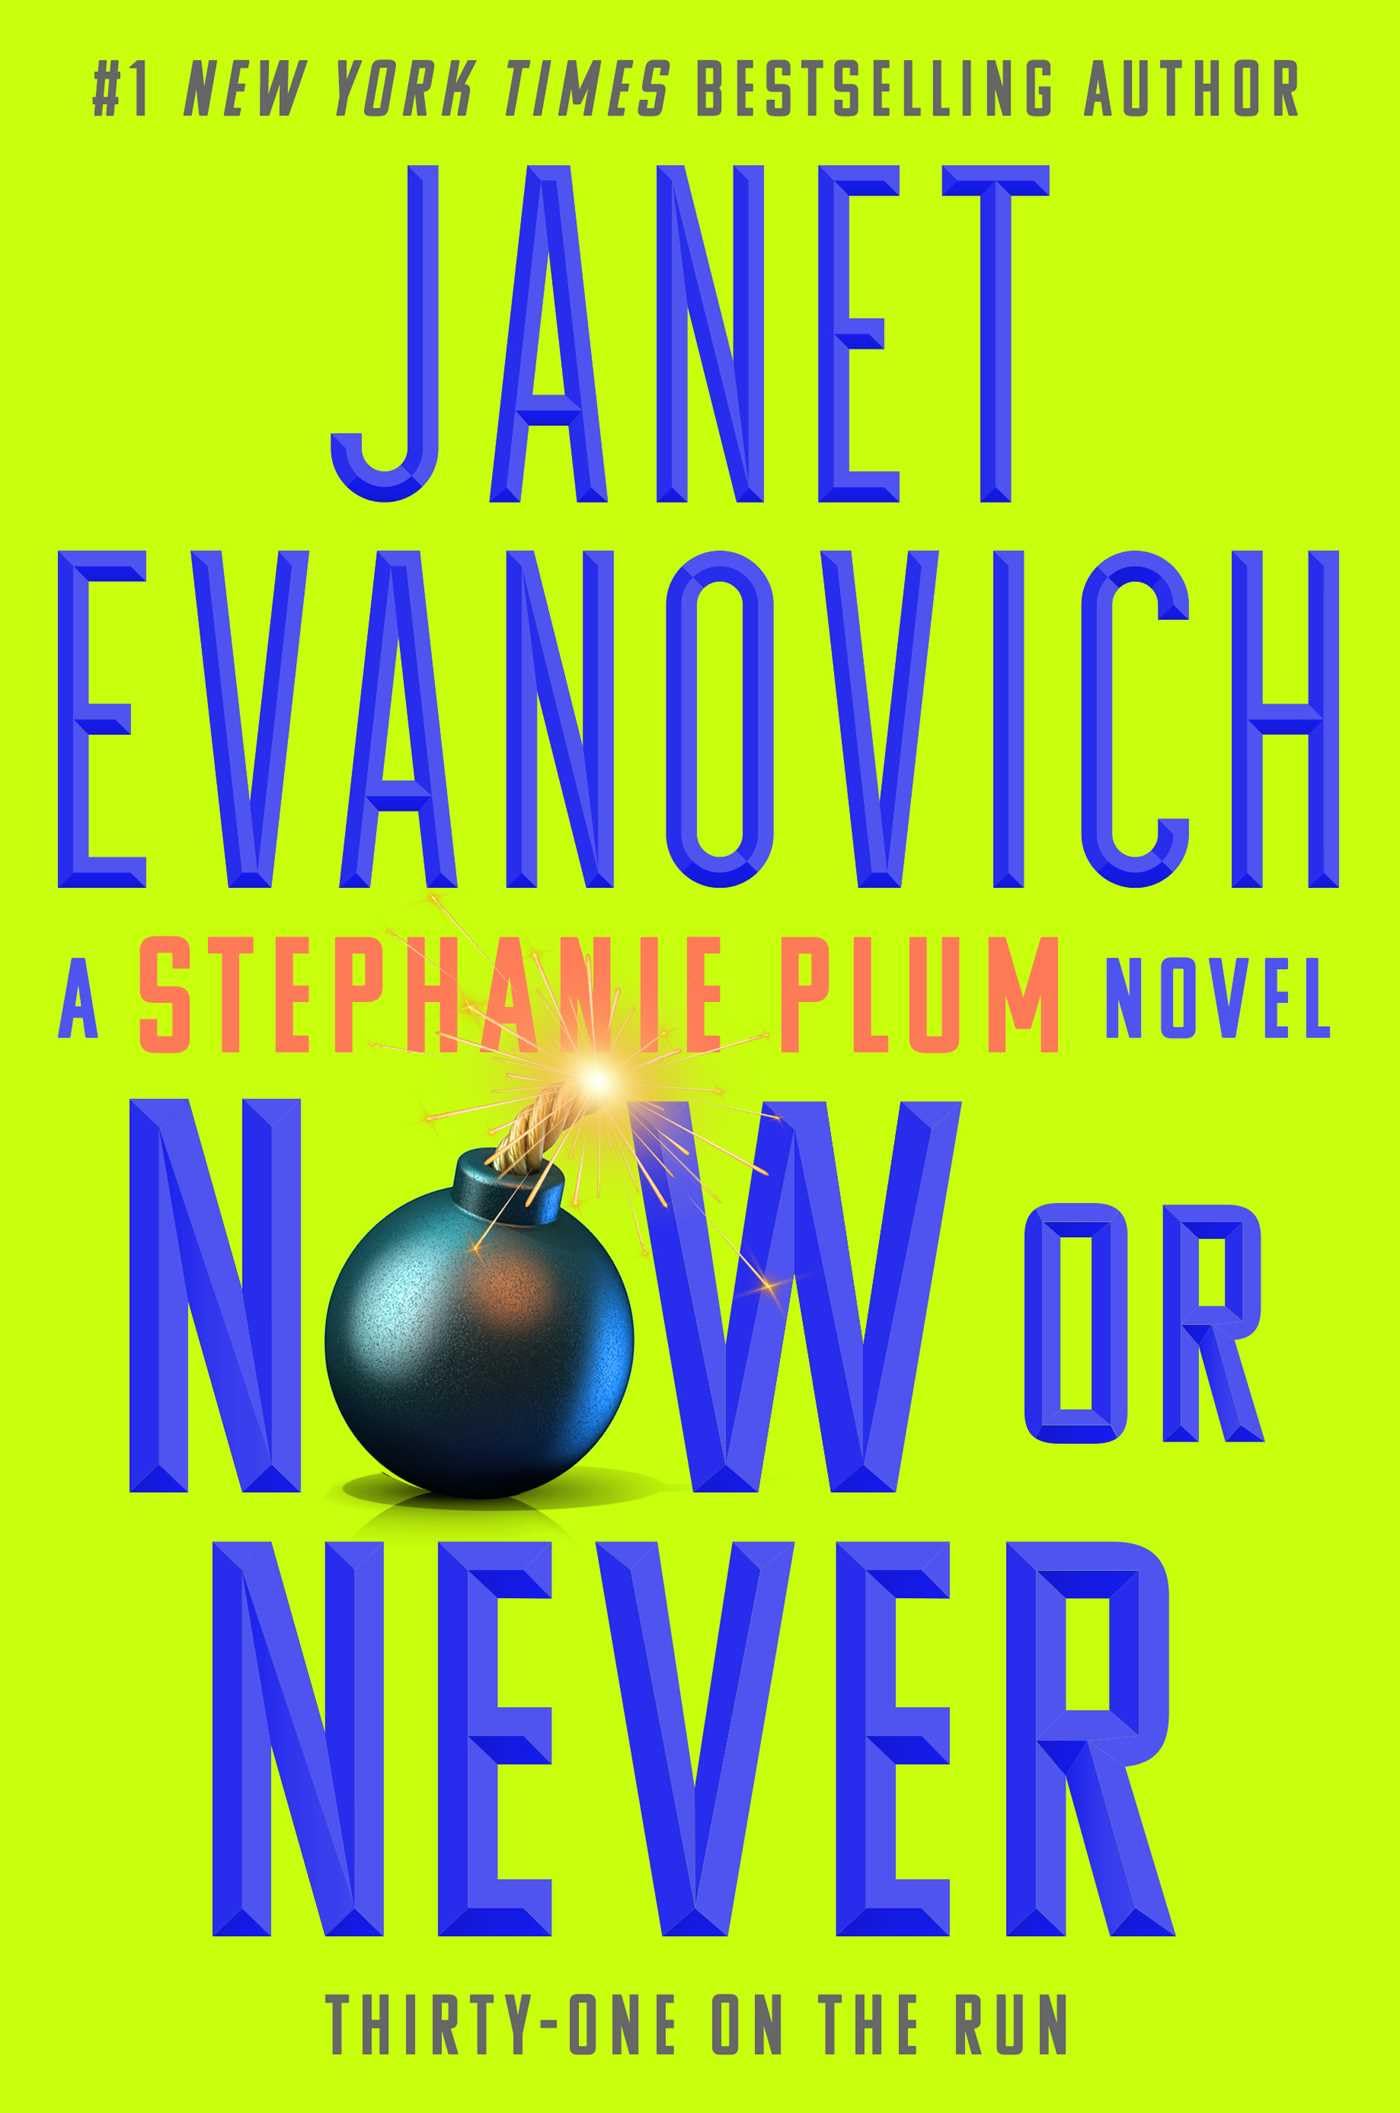 Now or Never (Stephanie Plum Book 31)